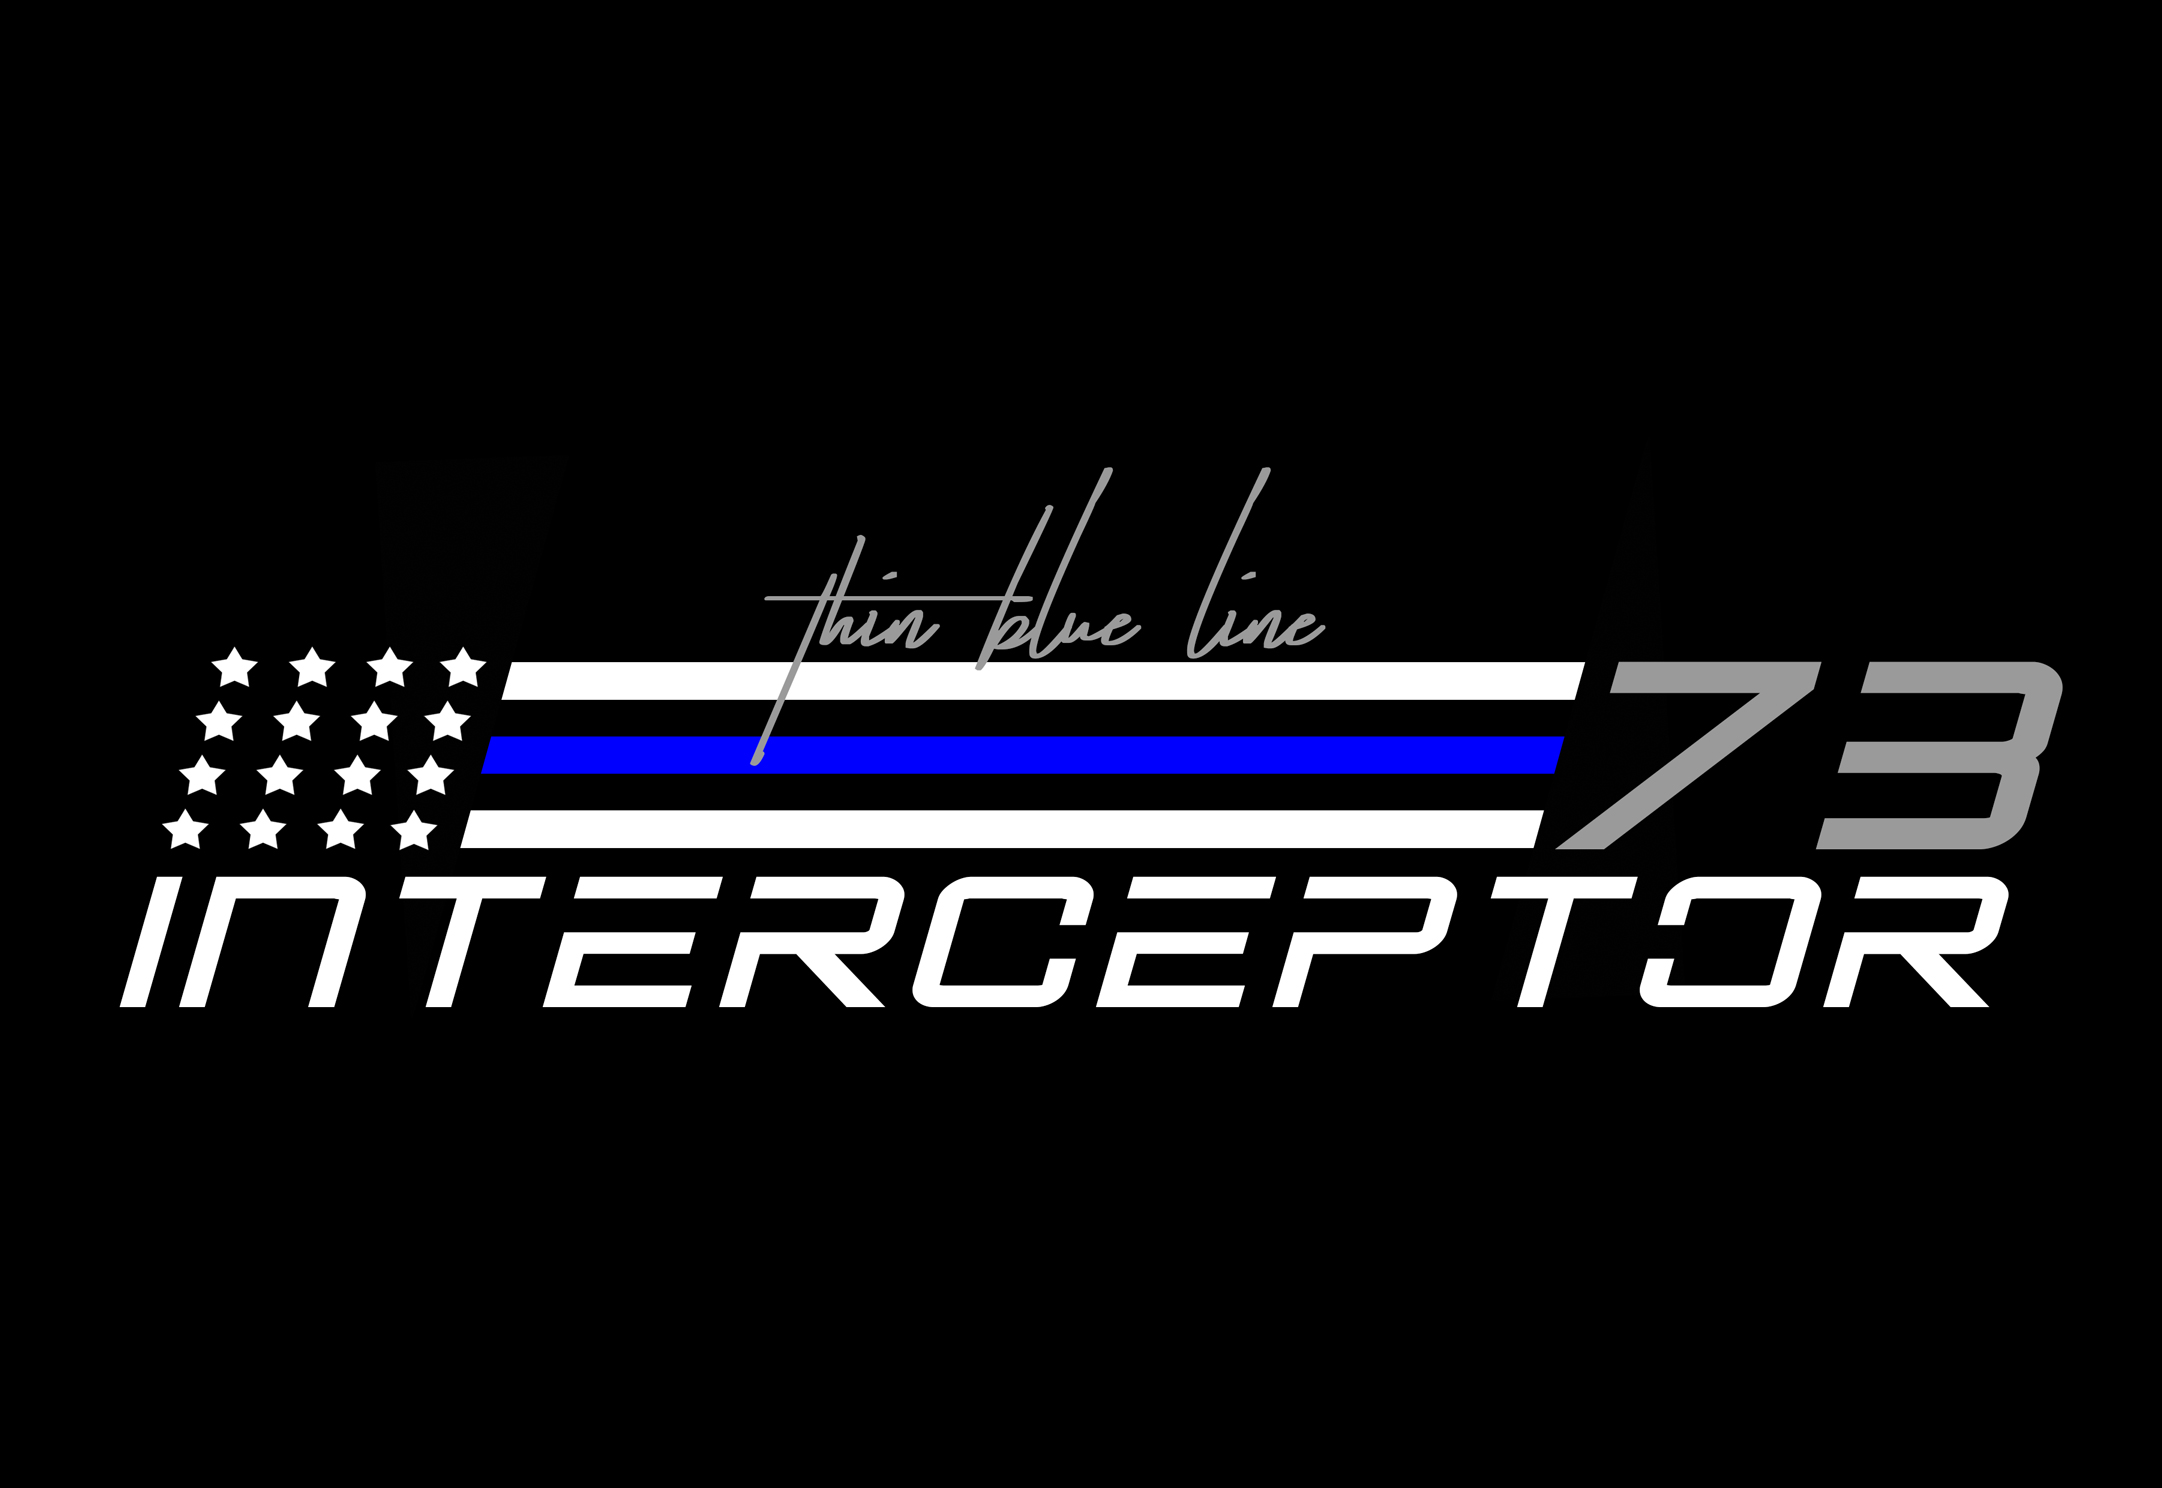 Buell Police Interceptor 73 by GARAJEK